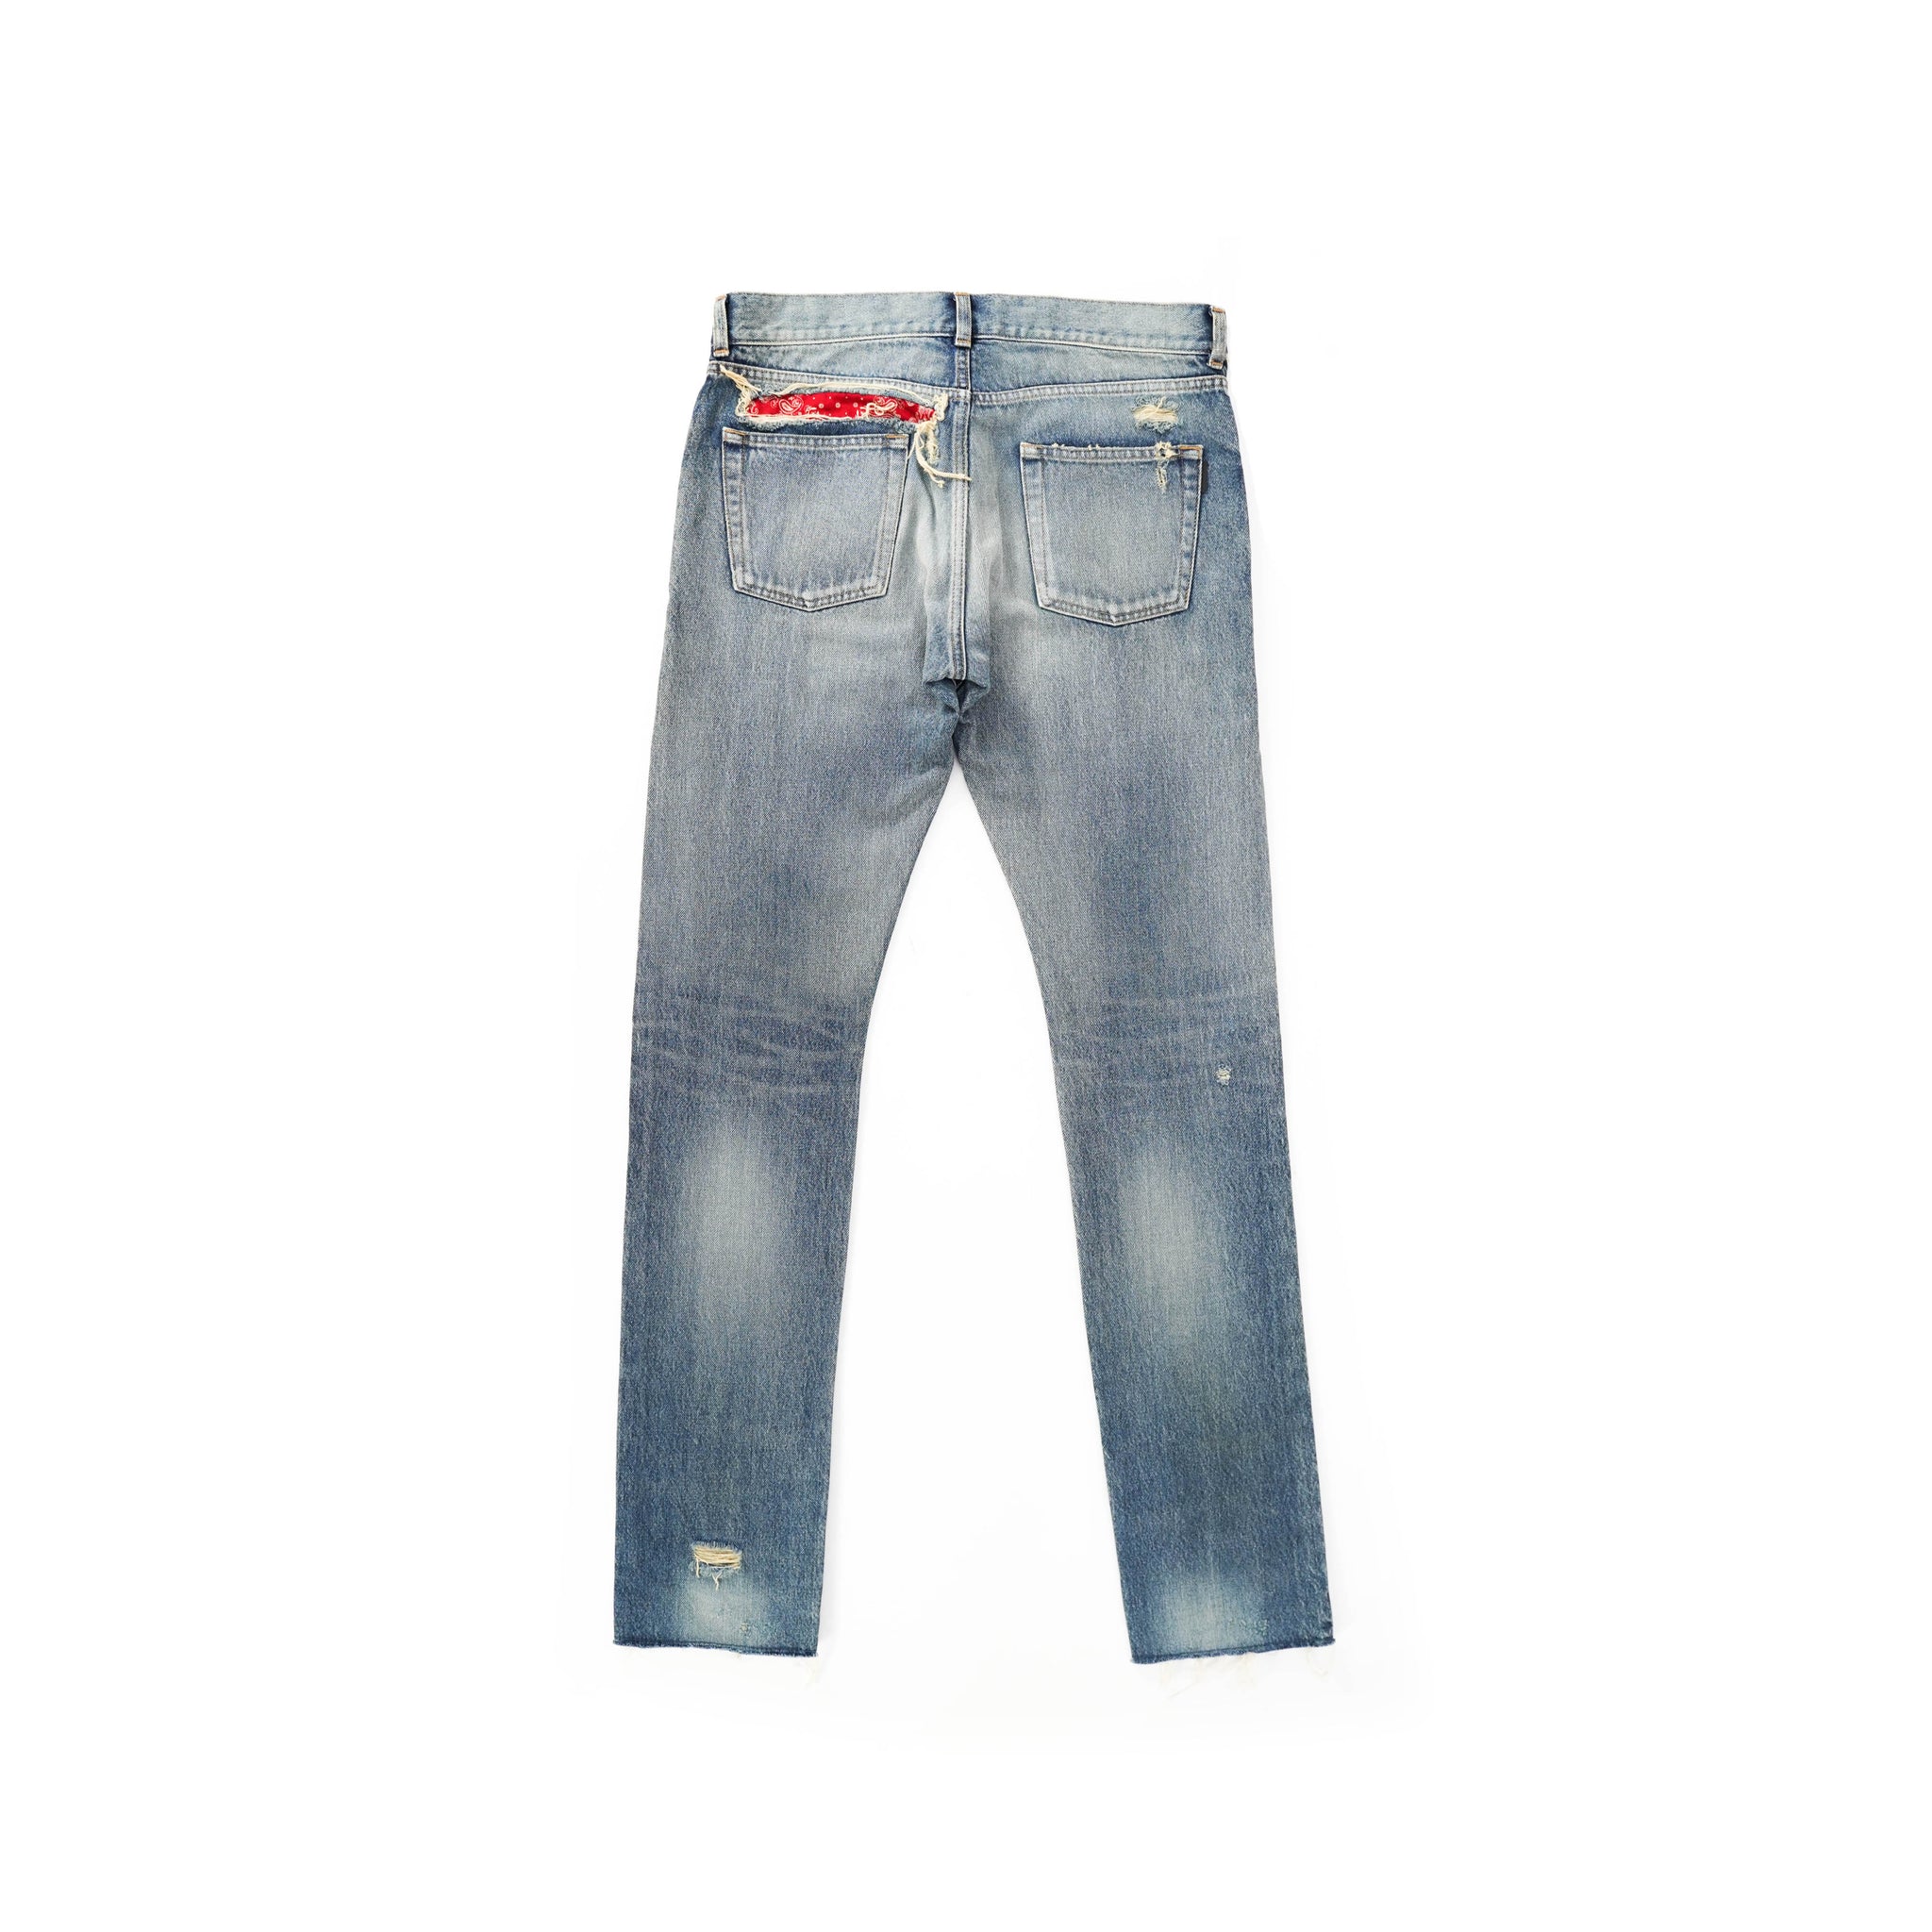 Distressed Bandana Jeans Backyardarchive –